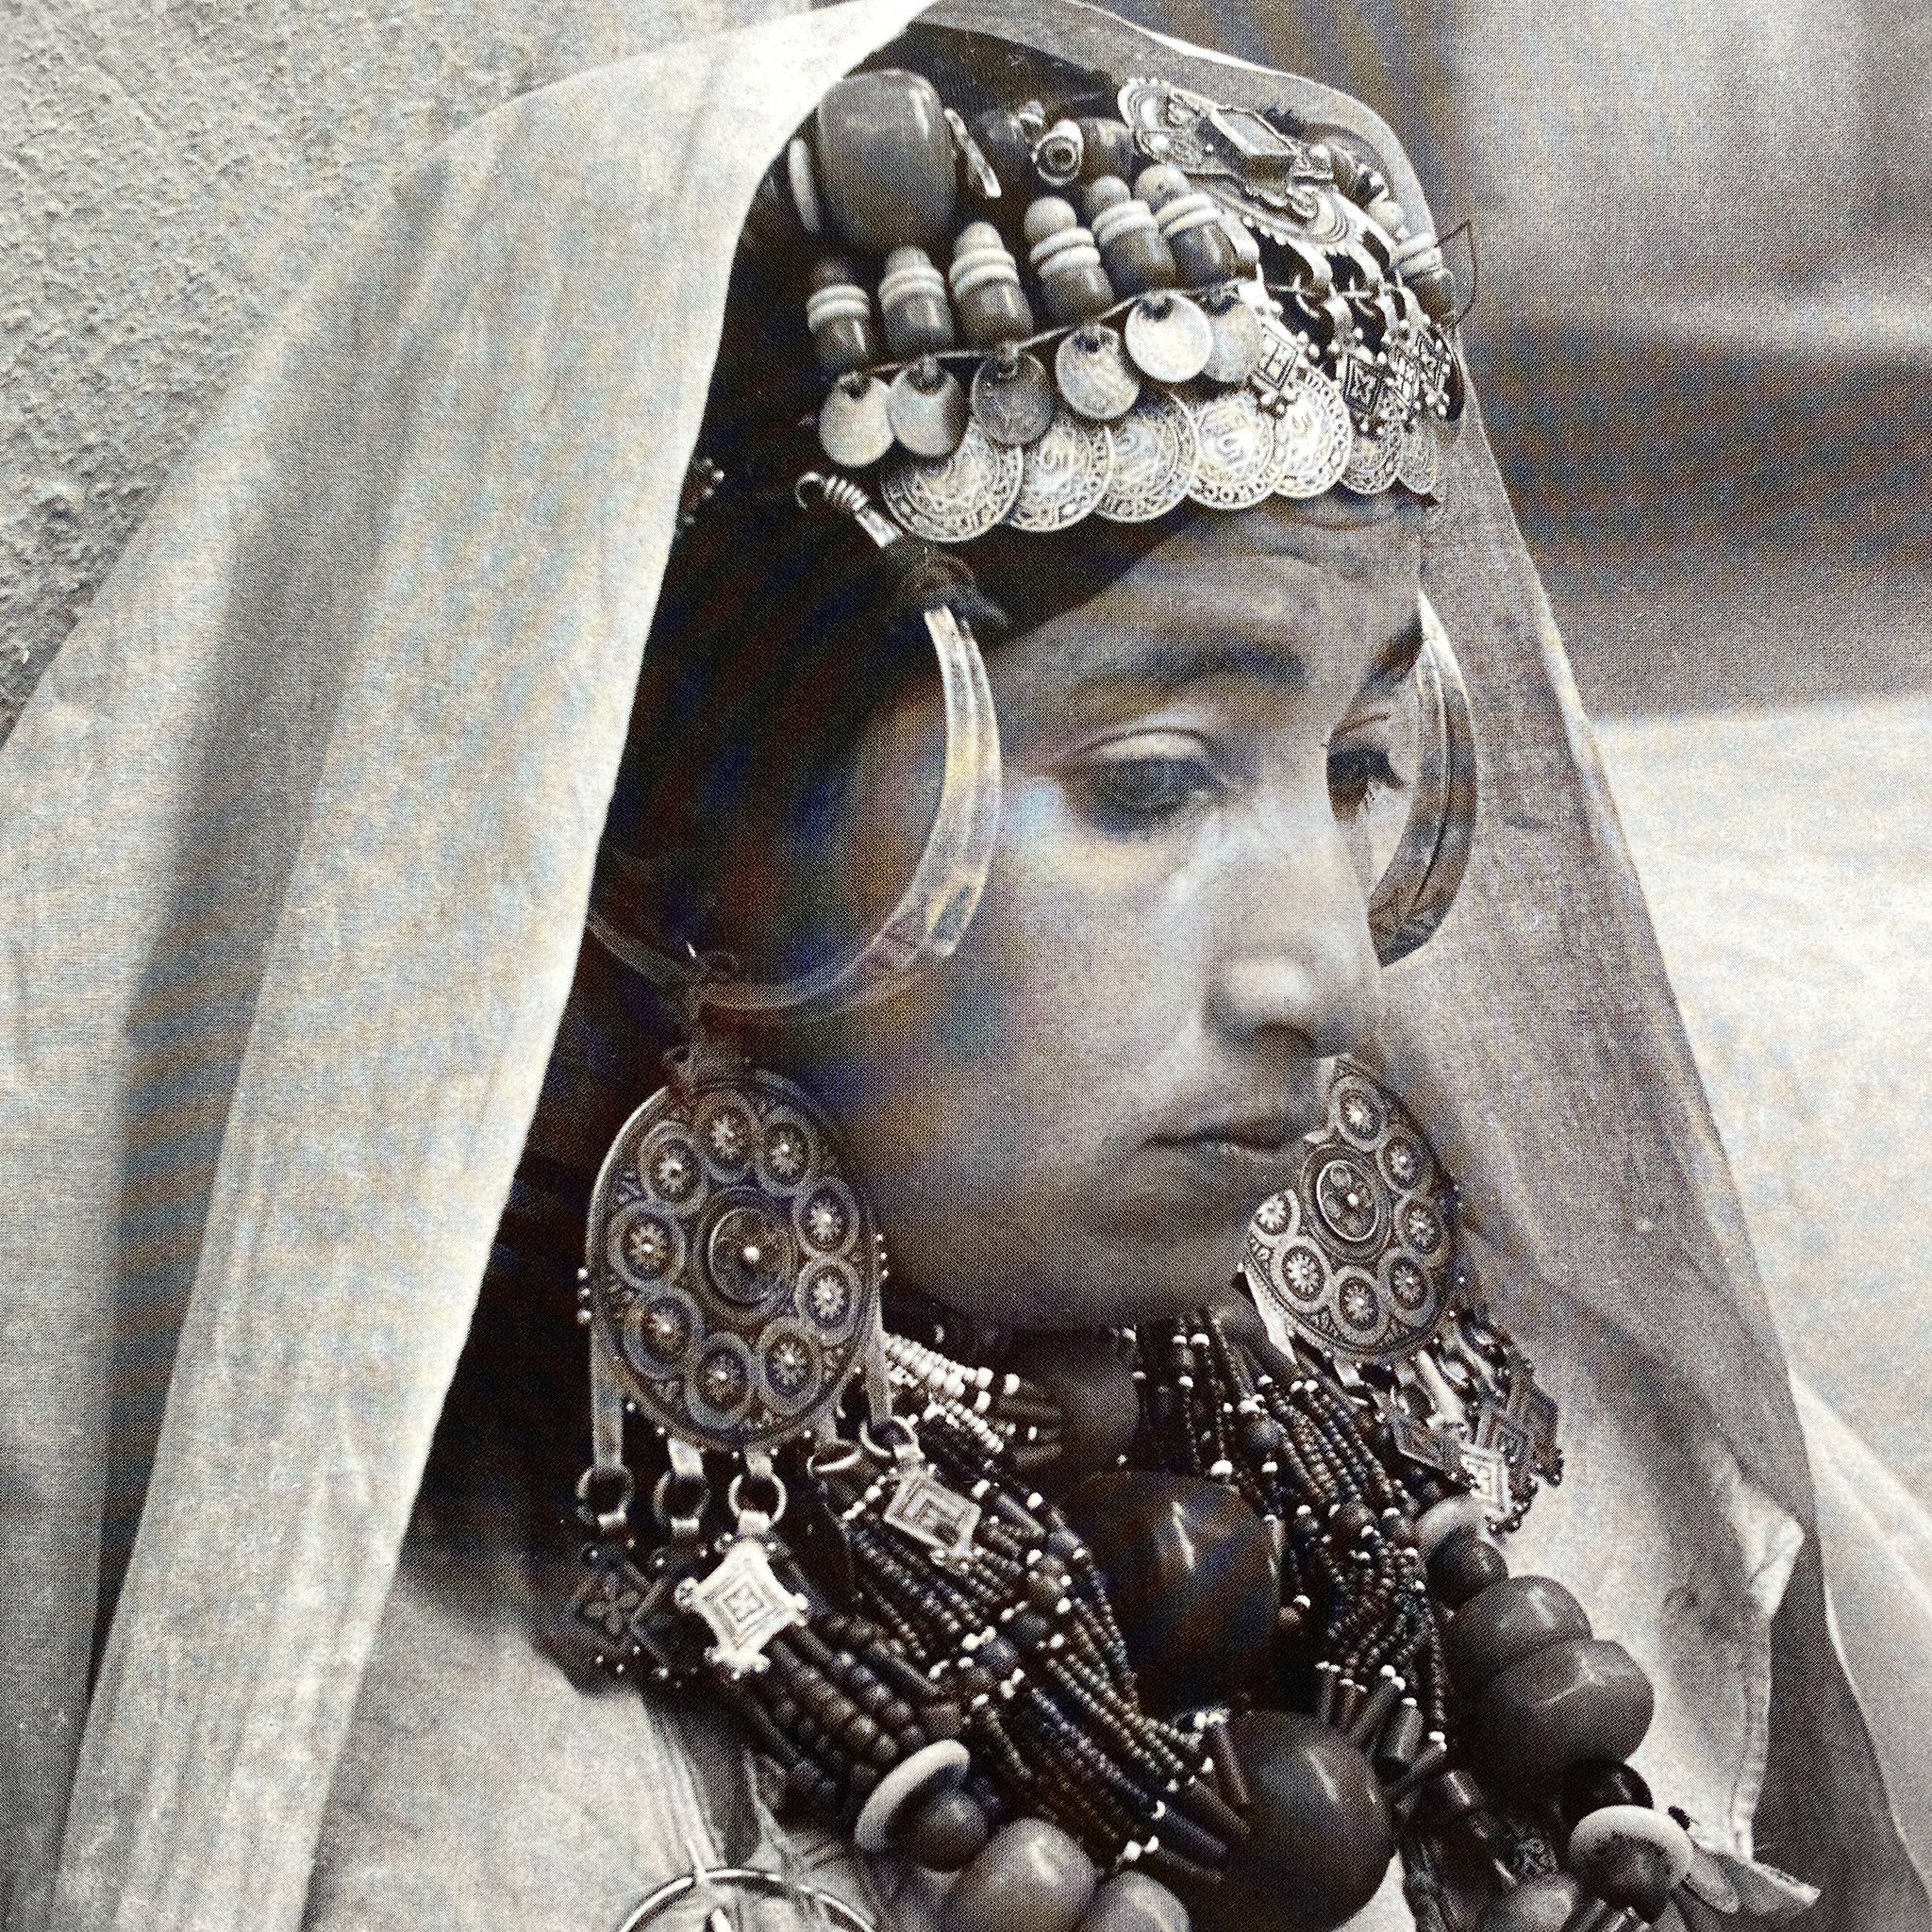 Old Silver Temporal Adornment, Anti-Atlas, Morocco